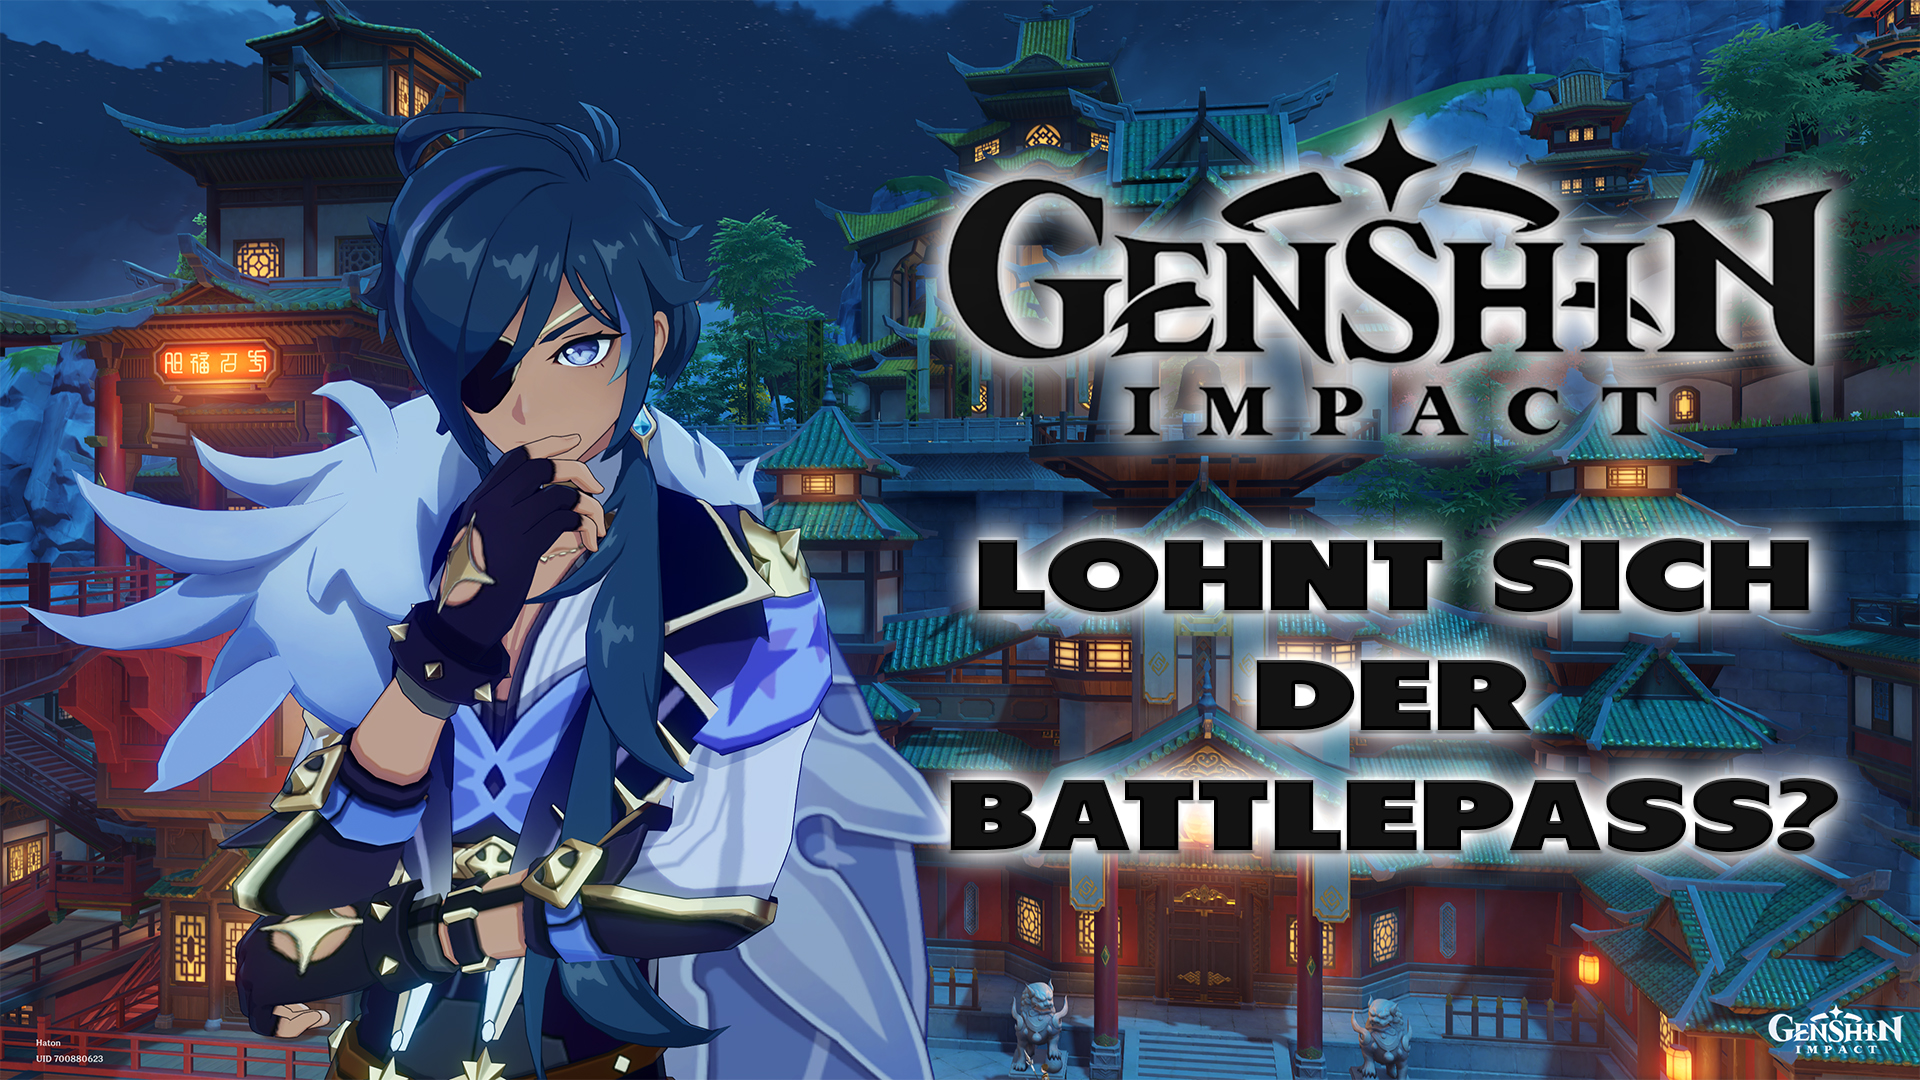 Genshin Impact: Lohnt sich der Battlepass? - Haton.net